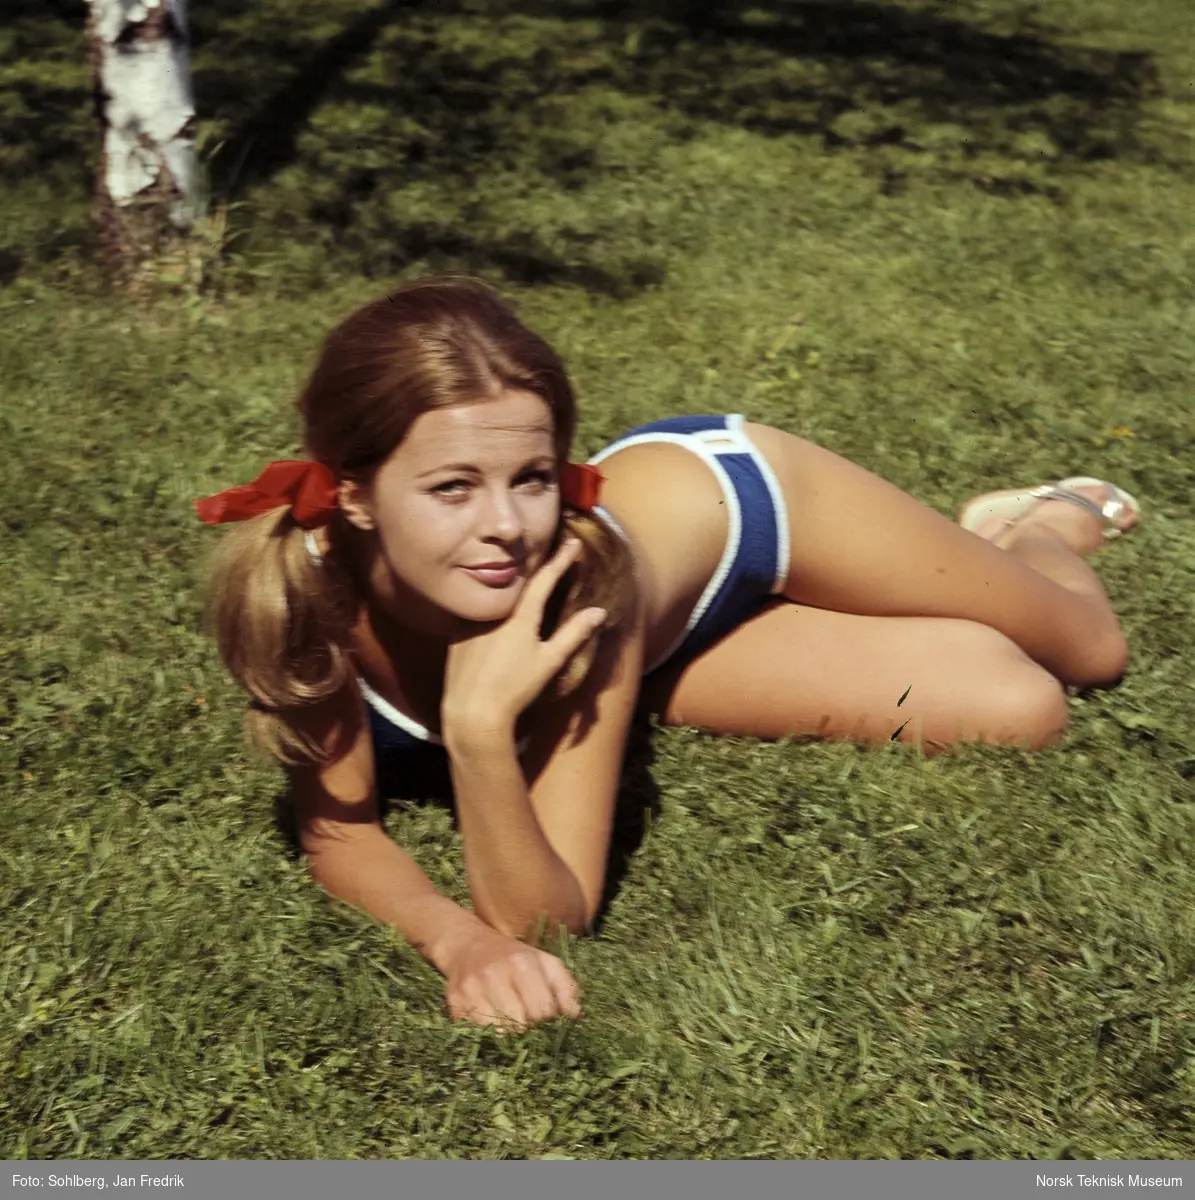 Kvinnelig modell viser bademote. Hun er fotografert liggende i gresset.